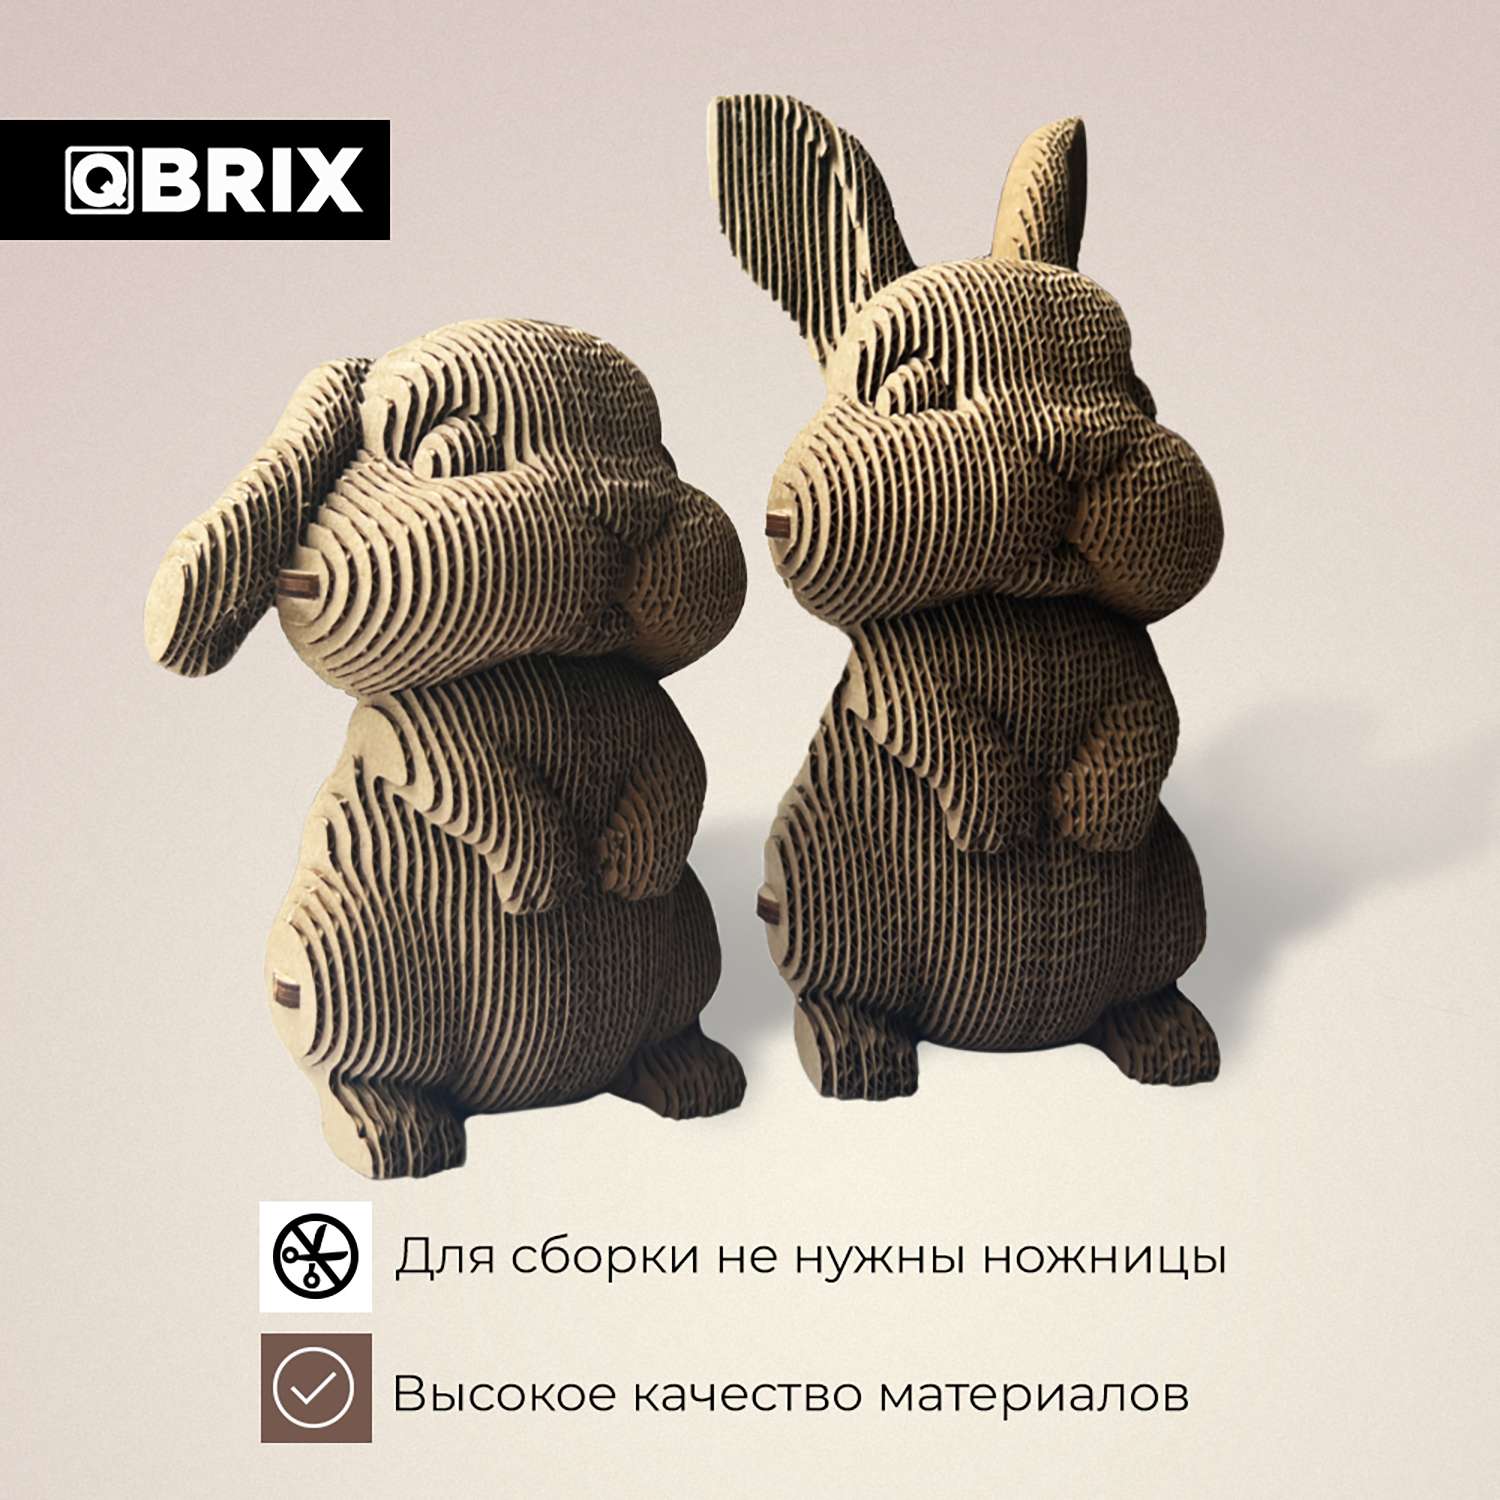 3D-конструкторы объемные для детей: купить наборы в интернет-магазине в Москве